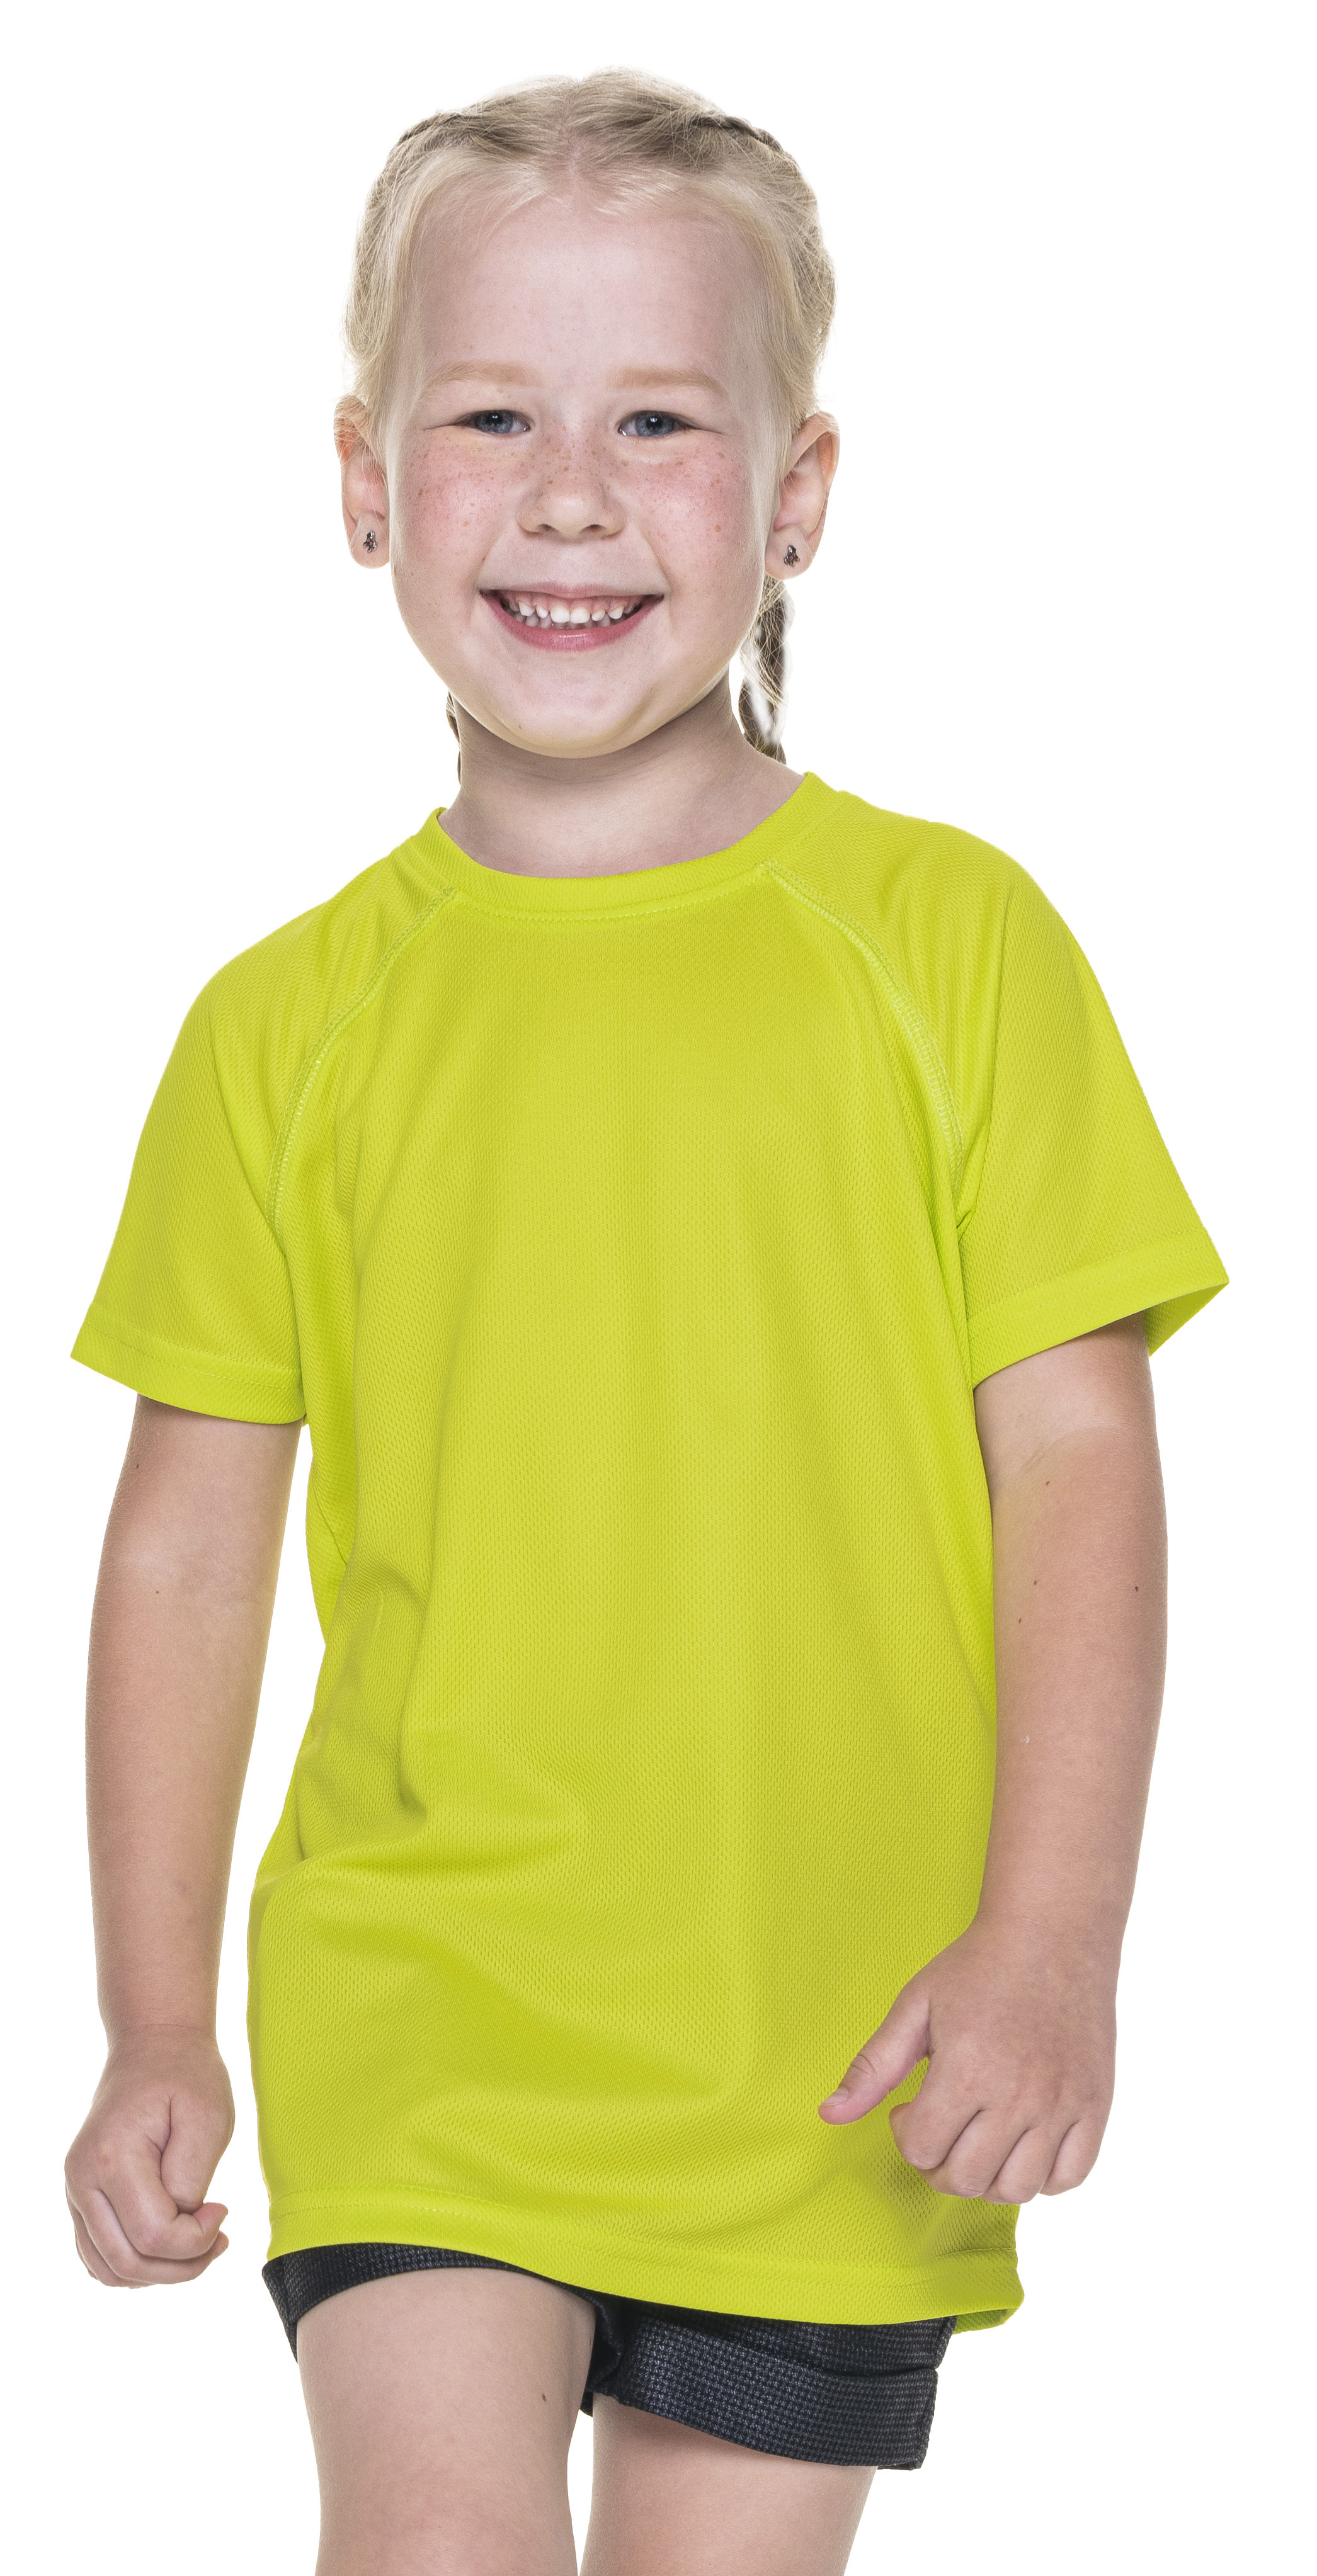 Koszulka dziecięca Promostars Chill Kid - limonkowa